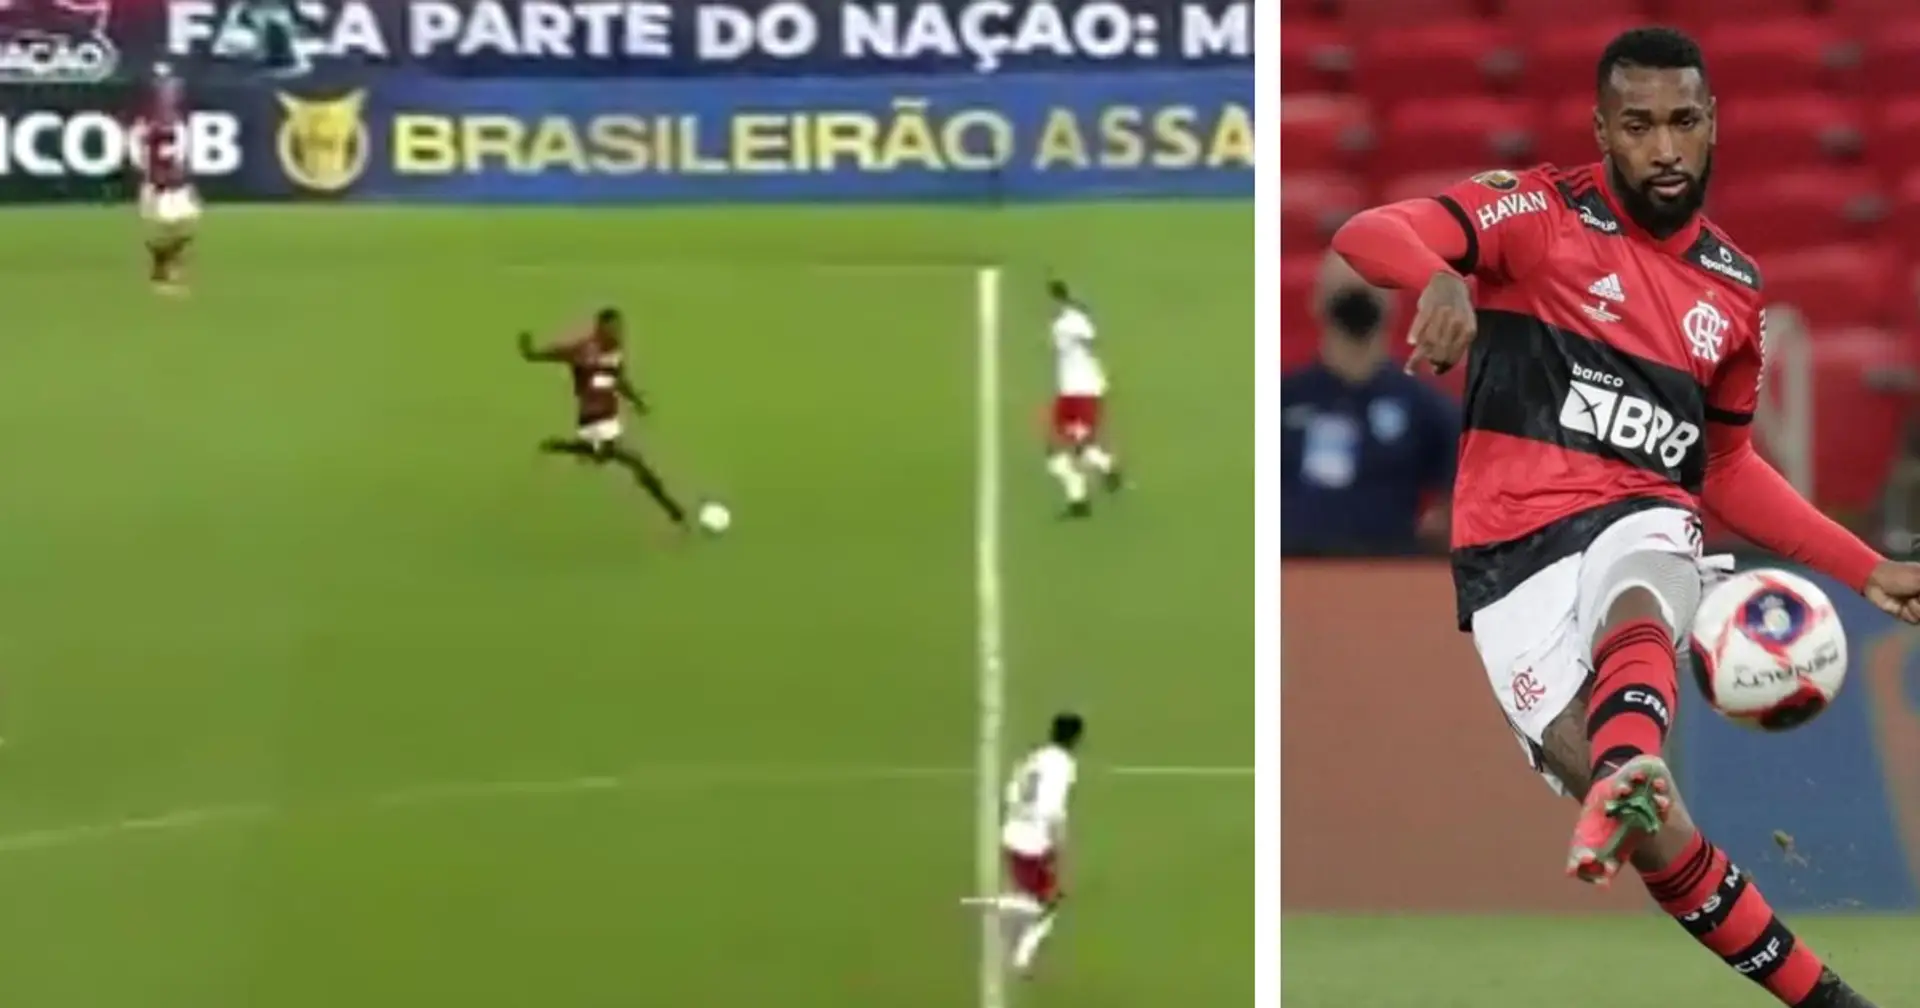 Gerson réalise une excellente transversale qui amène à un but magnifique de Flamengo